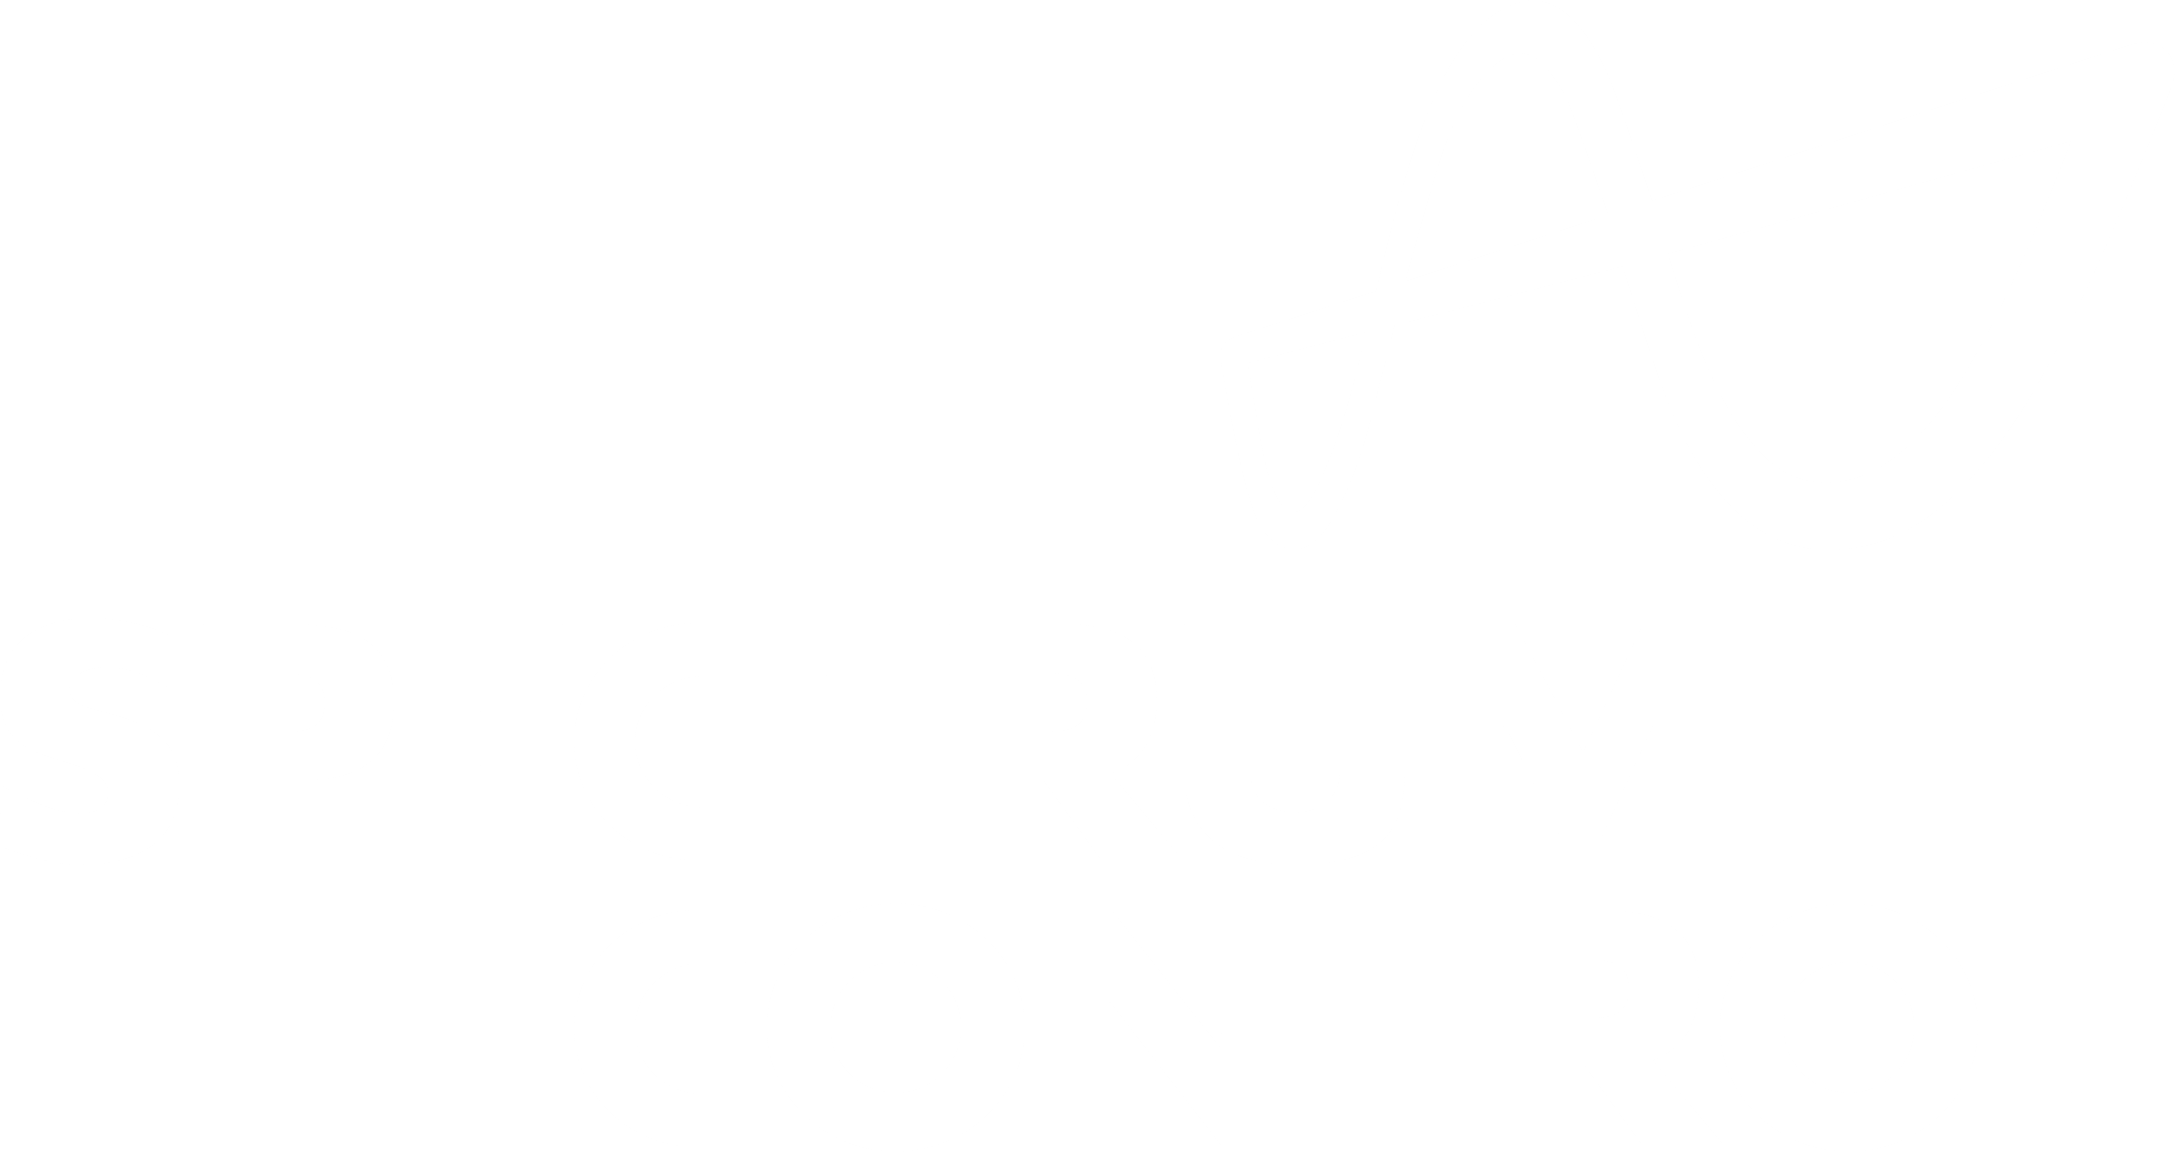 Spectrum Control, Inc.